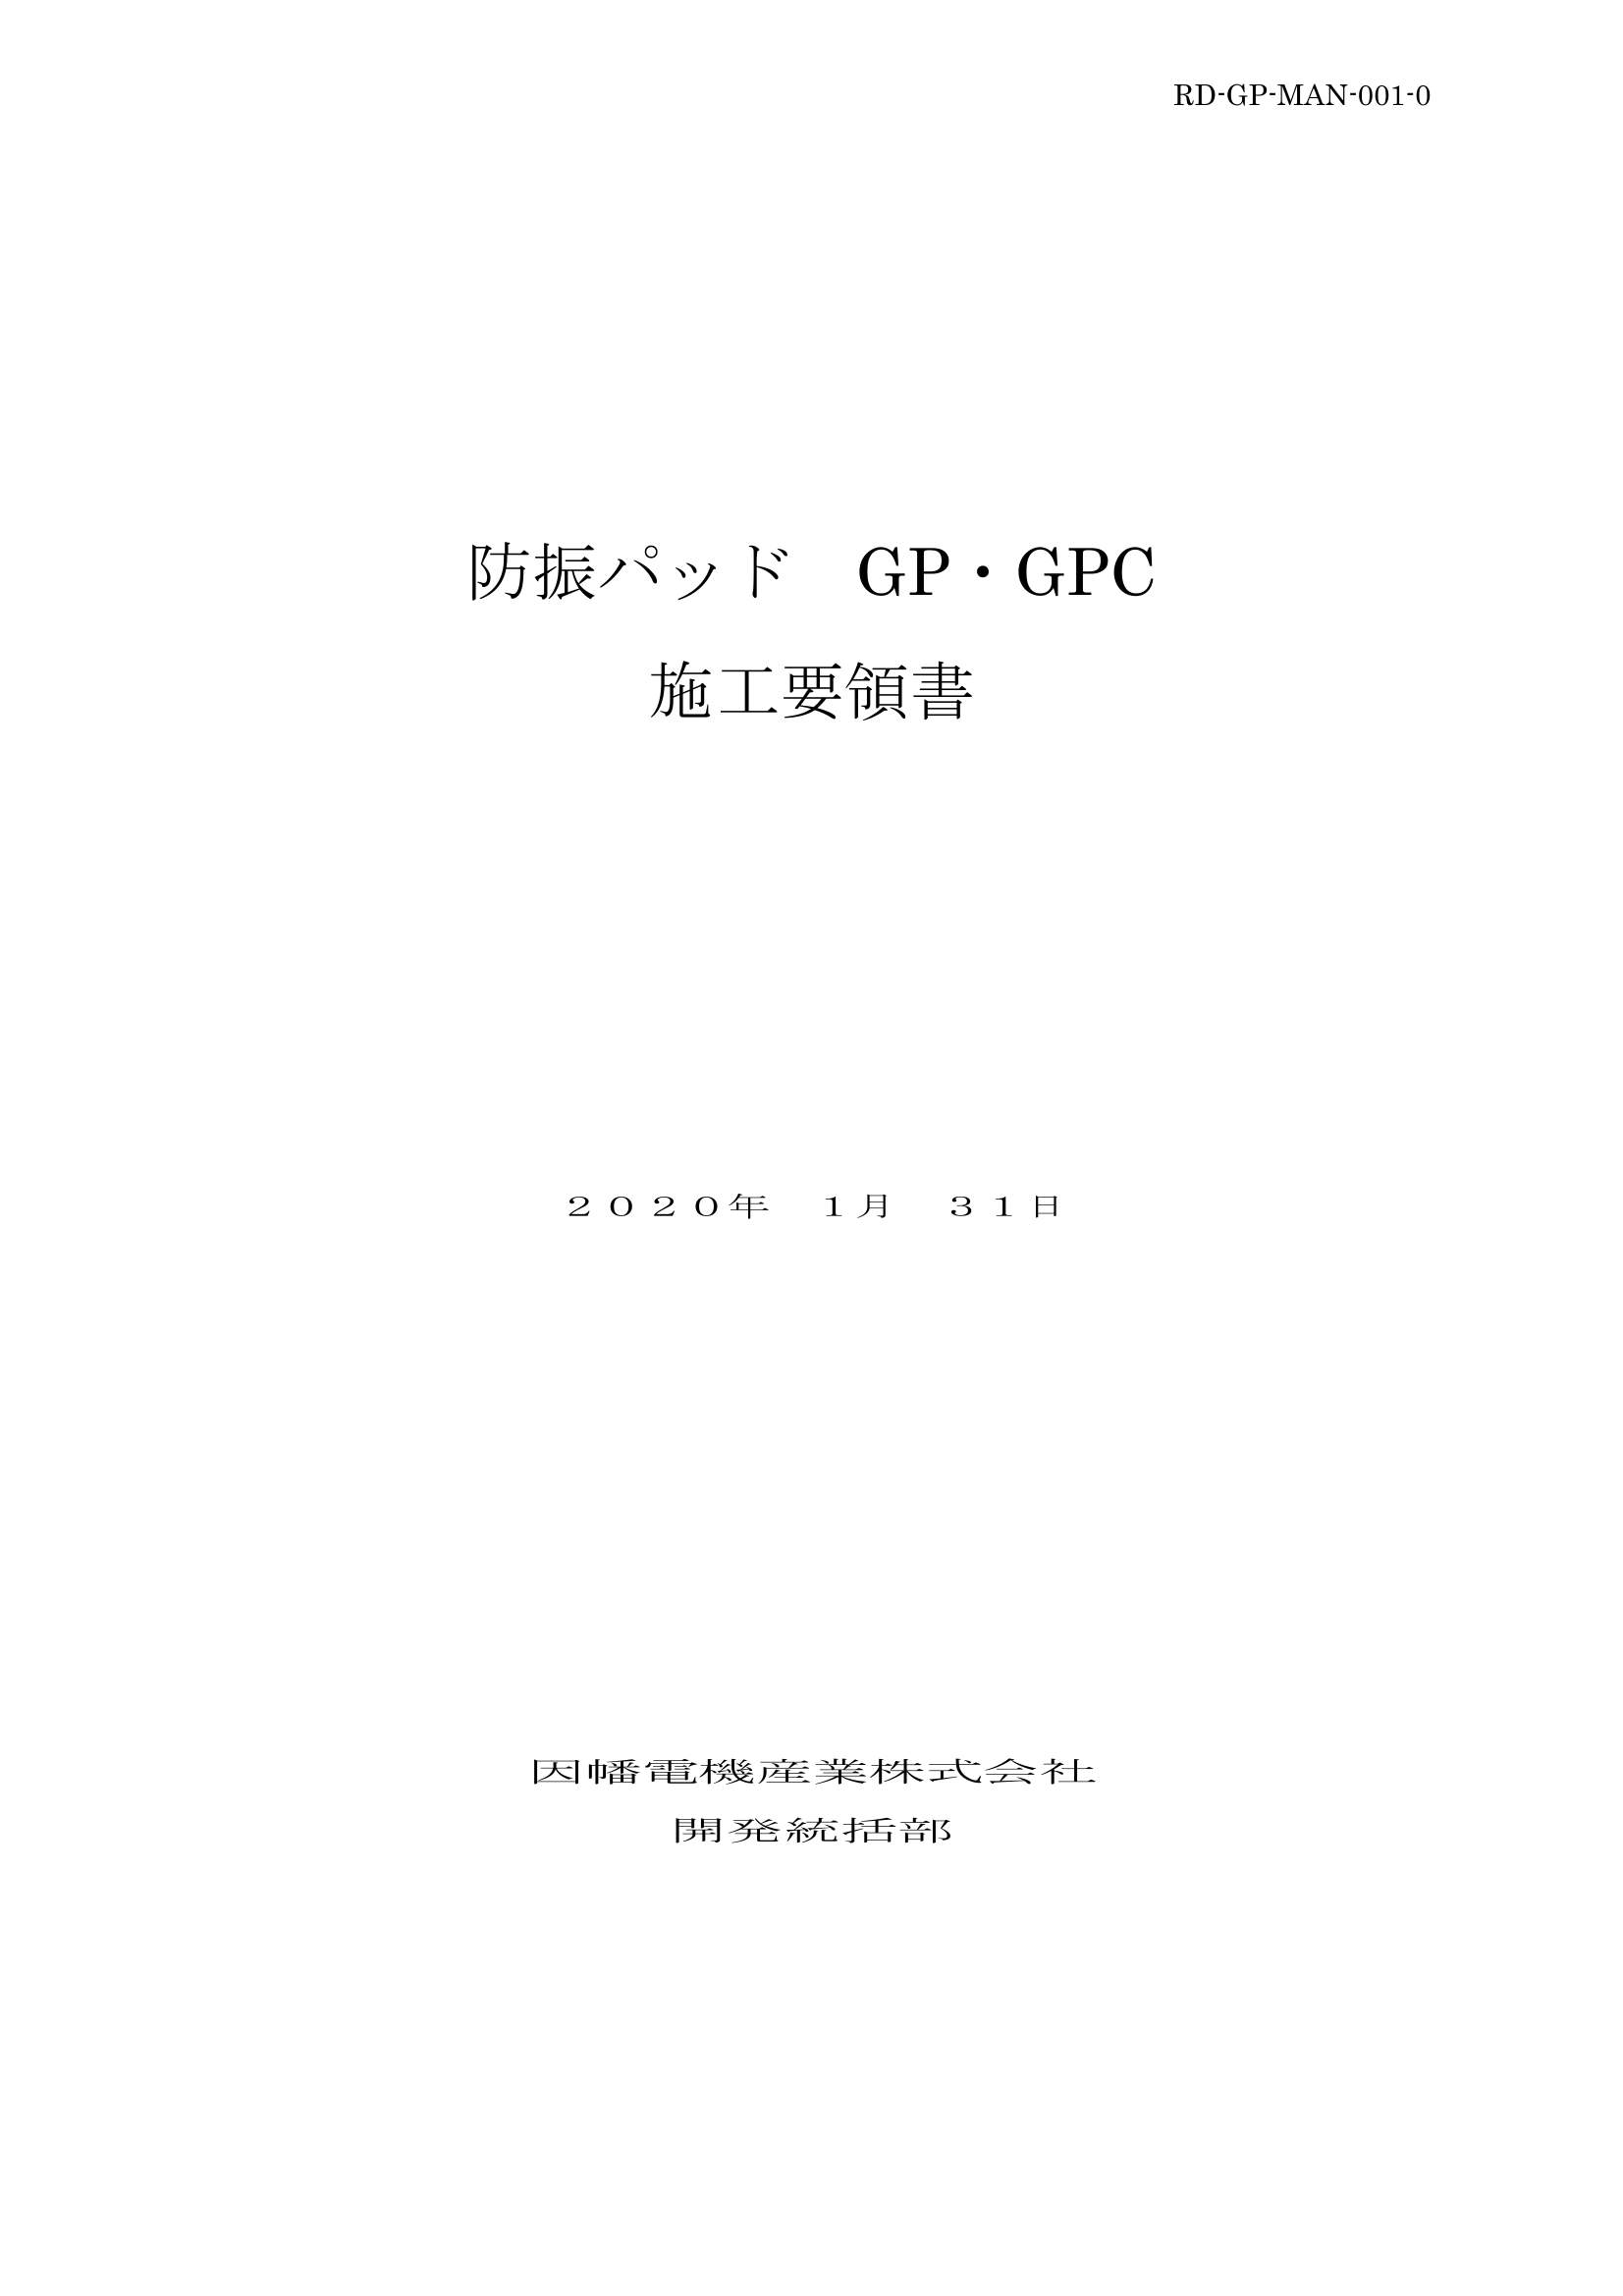 GP_施工要領手順書_20200131.pdf